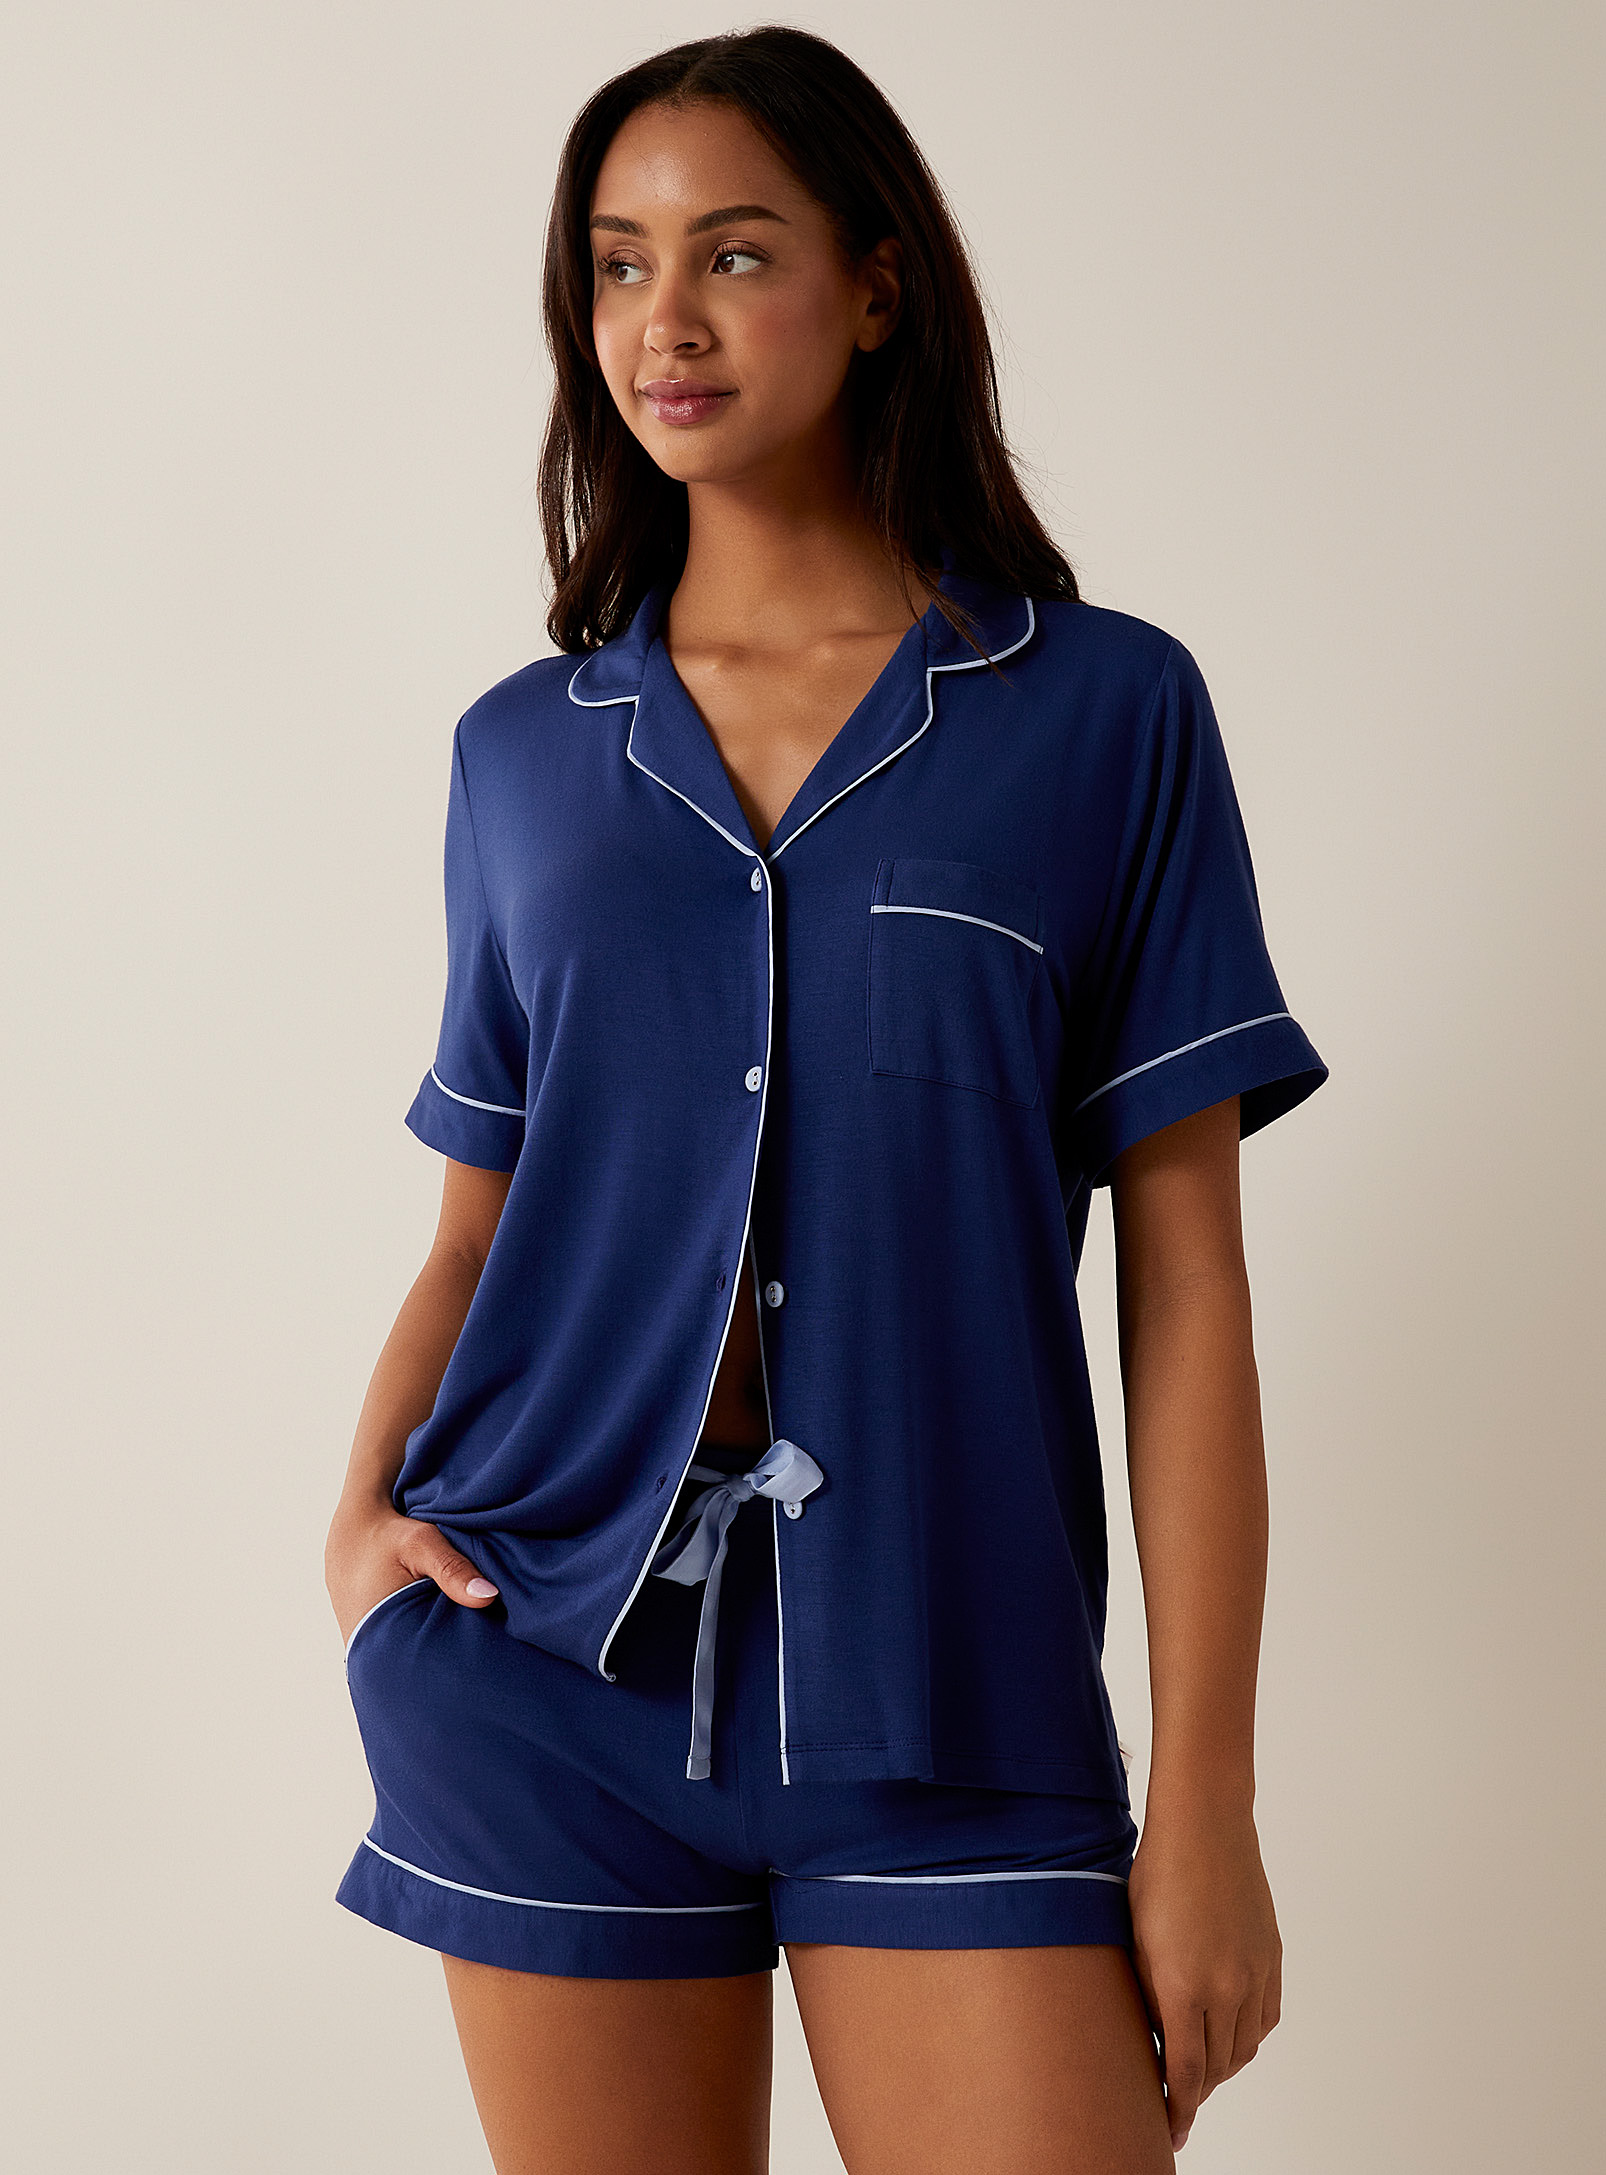 Cyberjammies - L'ensemble pyjama liséré modal cobalt